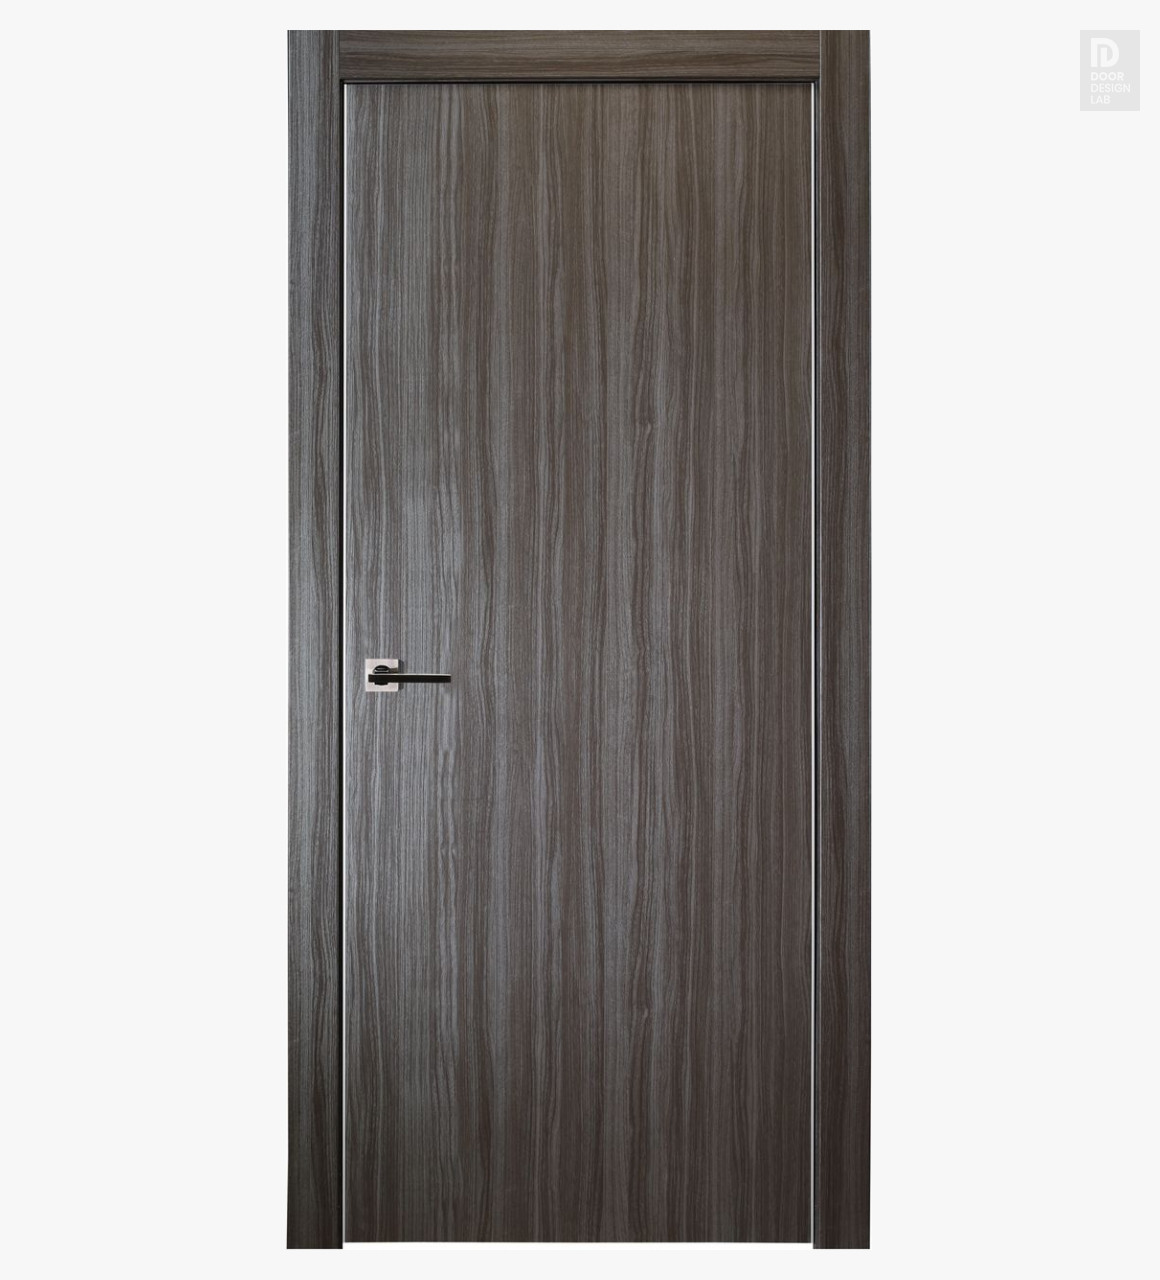 unica gray oak door as a kitchen pantry door